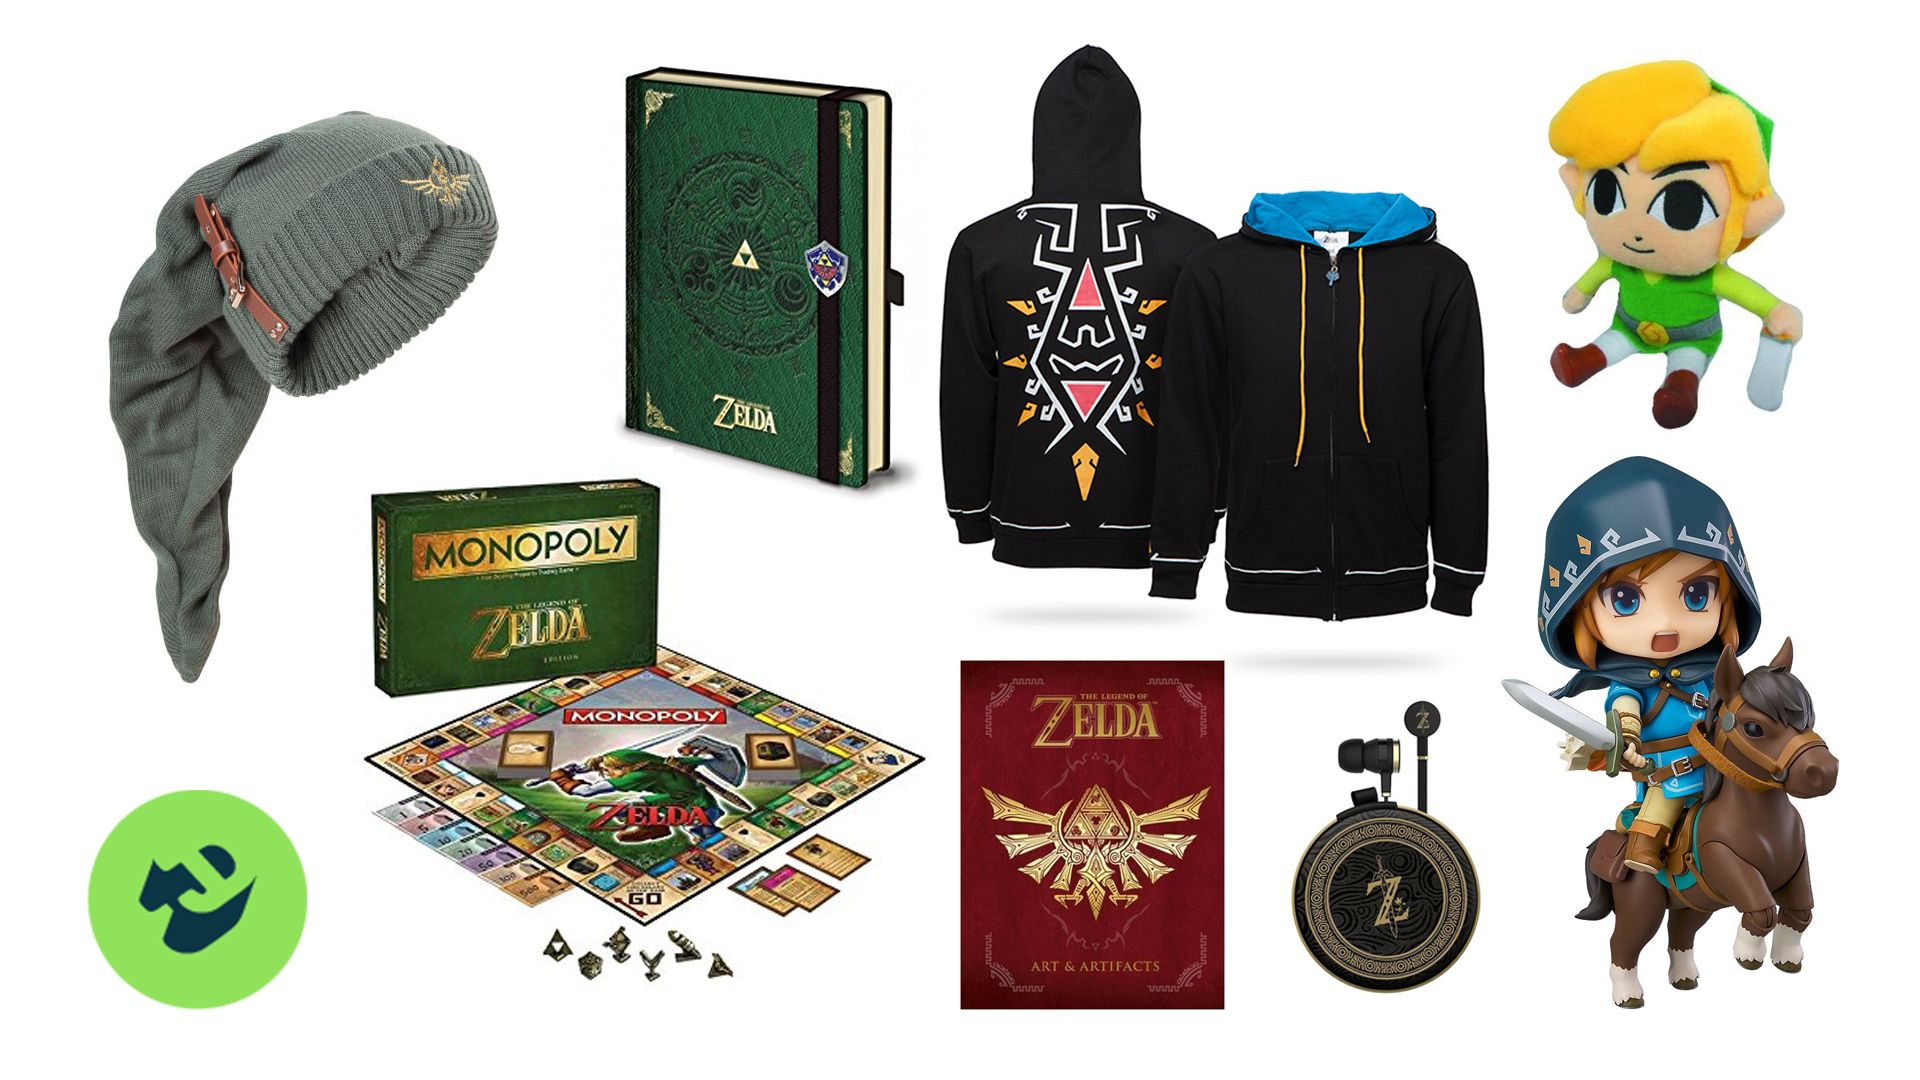 Deals: Splash Your Rupees On This Amazing Legend Of Zelda Merchandise